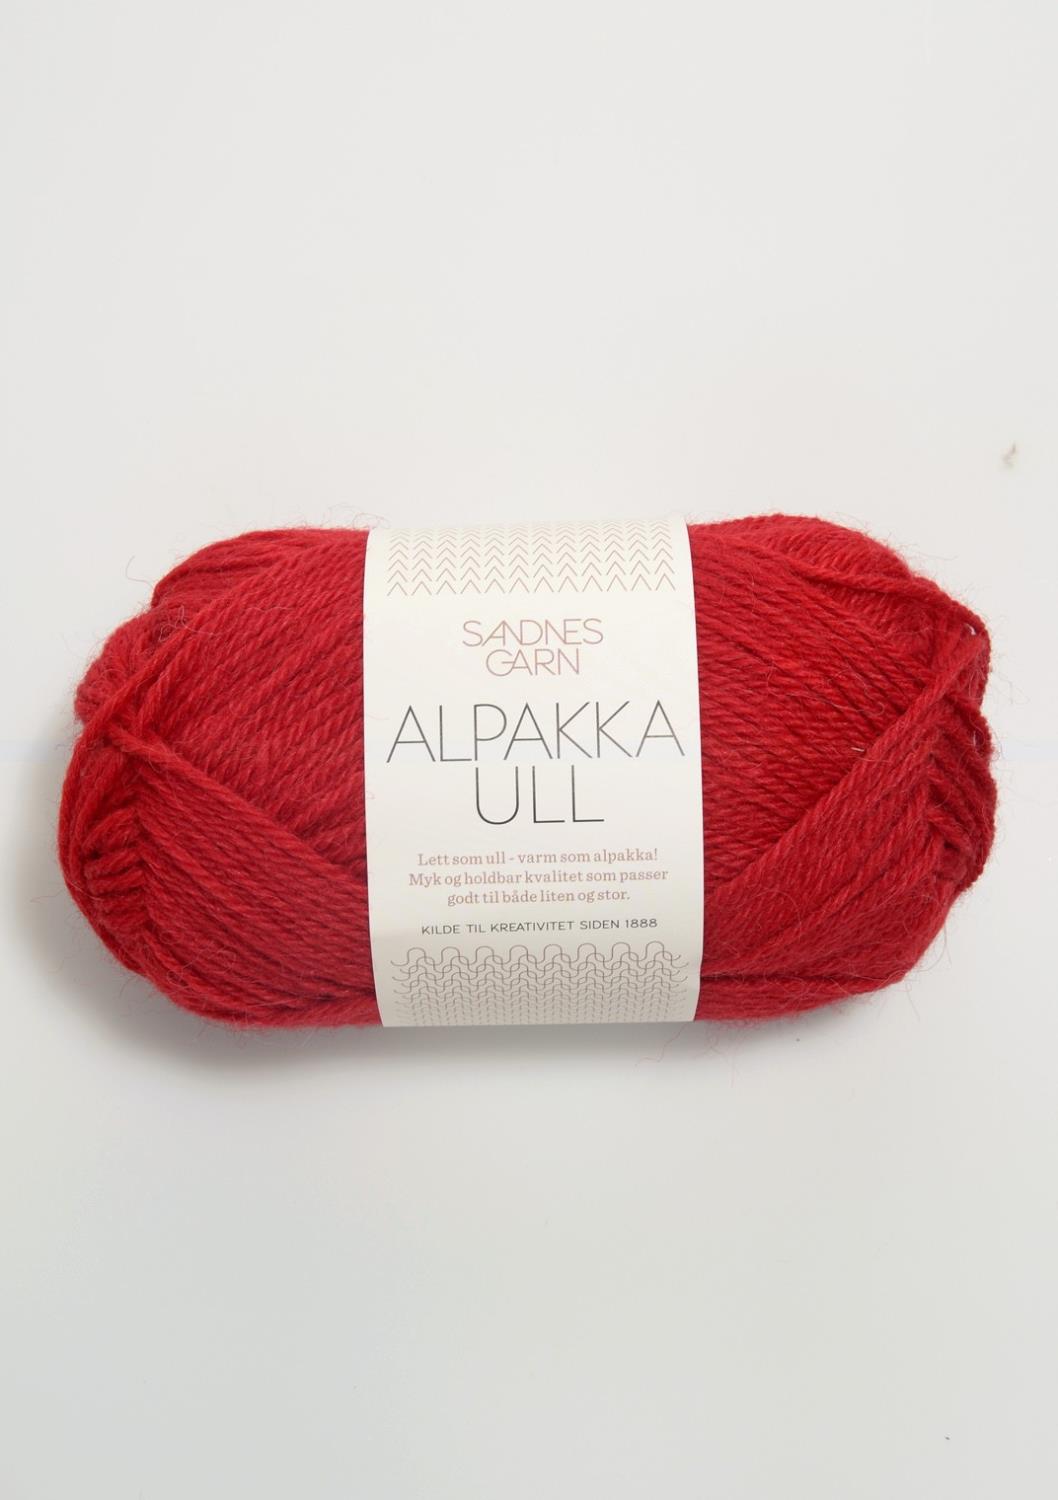 Alpakka Ull Sandnes 4219 - Rød